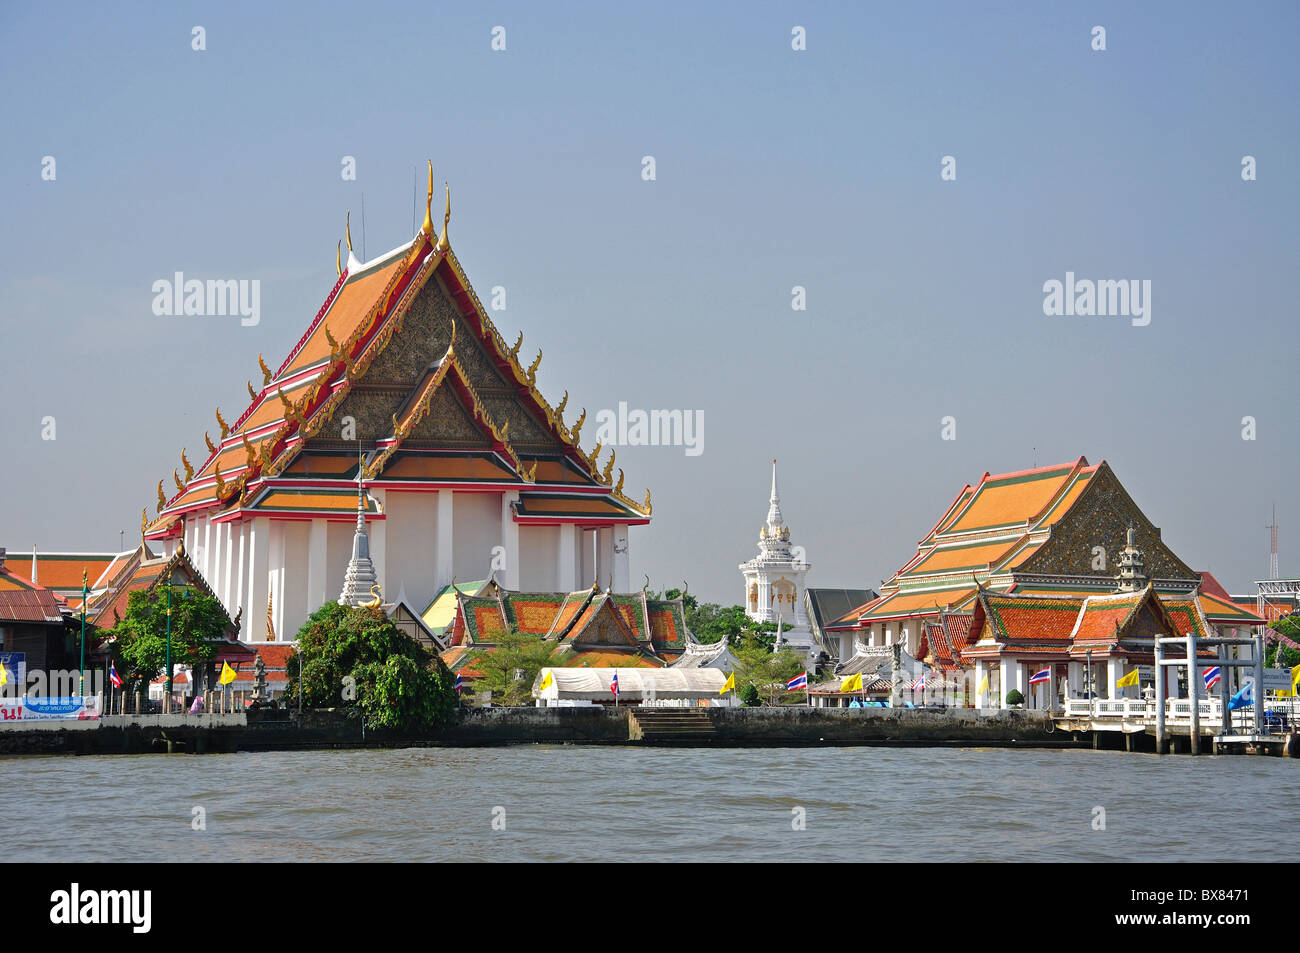 Des temples sur la rivière Chao Phraya, Bangkok Yai District, Bangkok, Thaïlande Banque D'Images